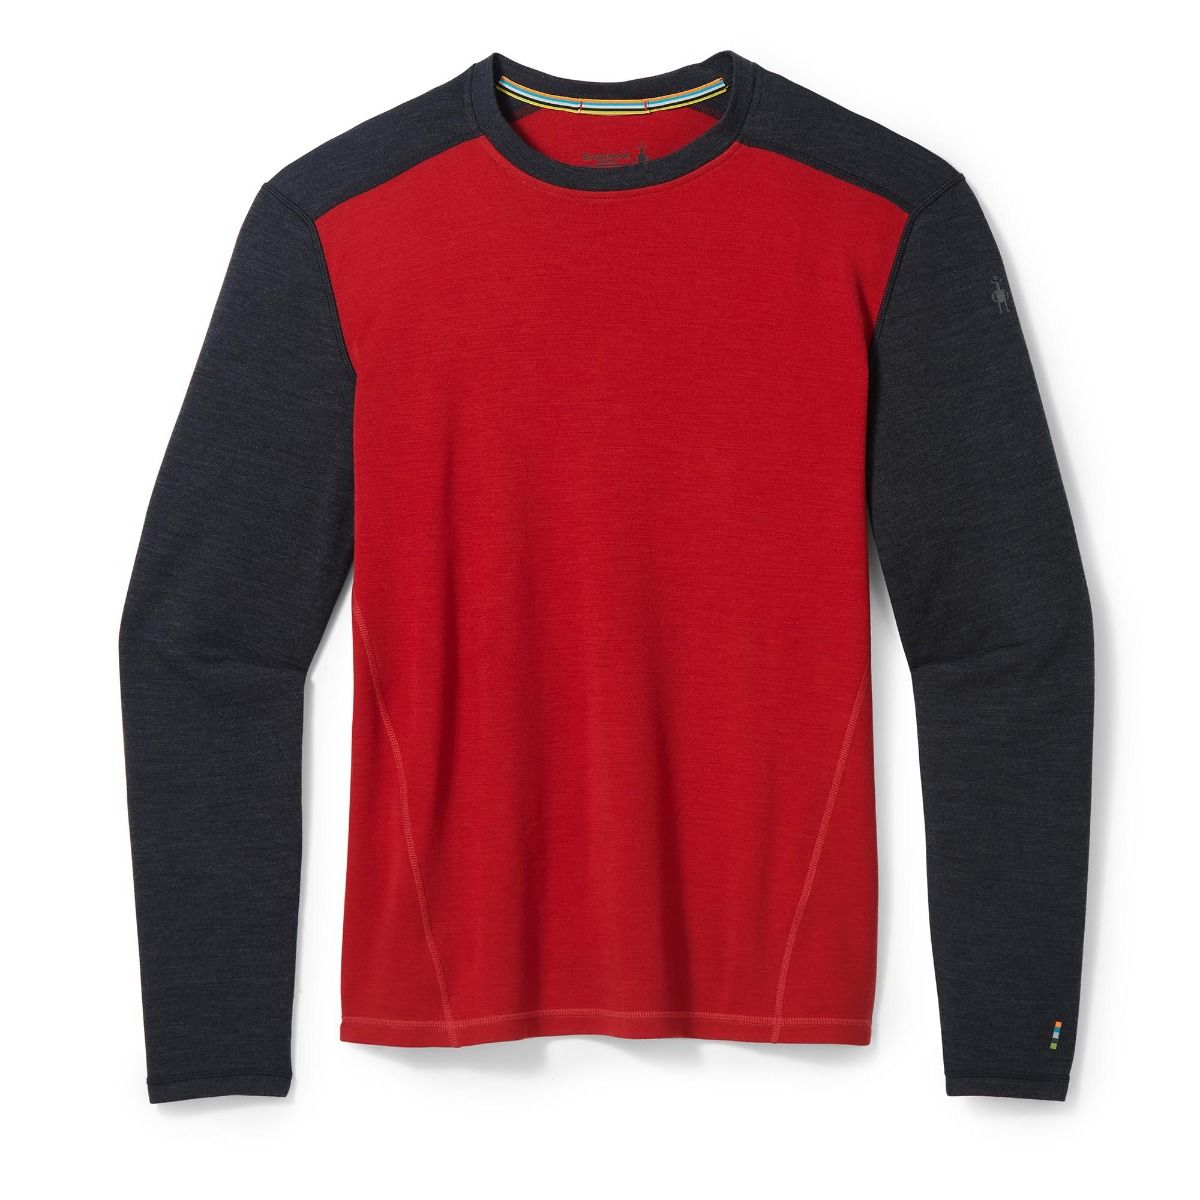  M MERINO SPORT 150ONG SLEEVE CREW tbtn red h black - tričko  pánské - SMARTWOOL - 64.78 € - outdoorové oblečení a vybavení shop